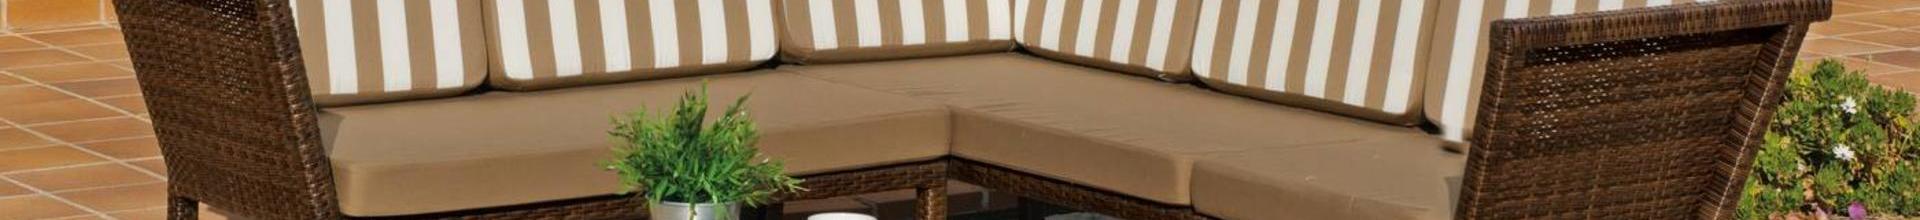 Calesa Modular Sofa Set